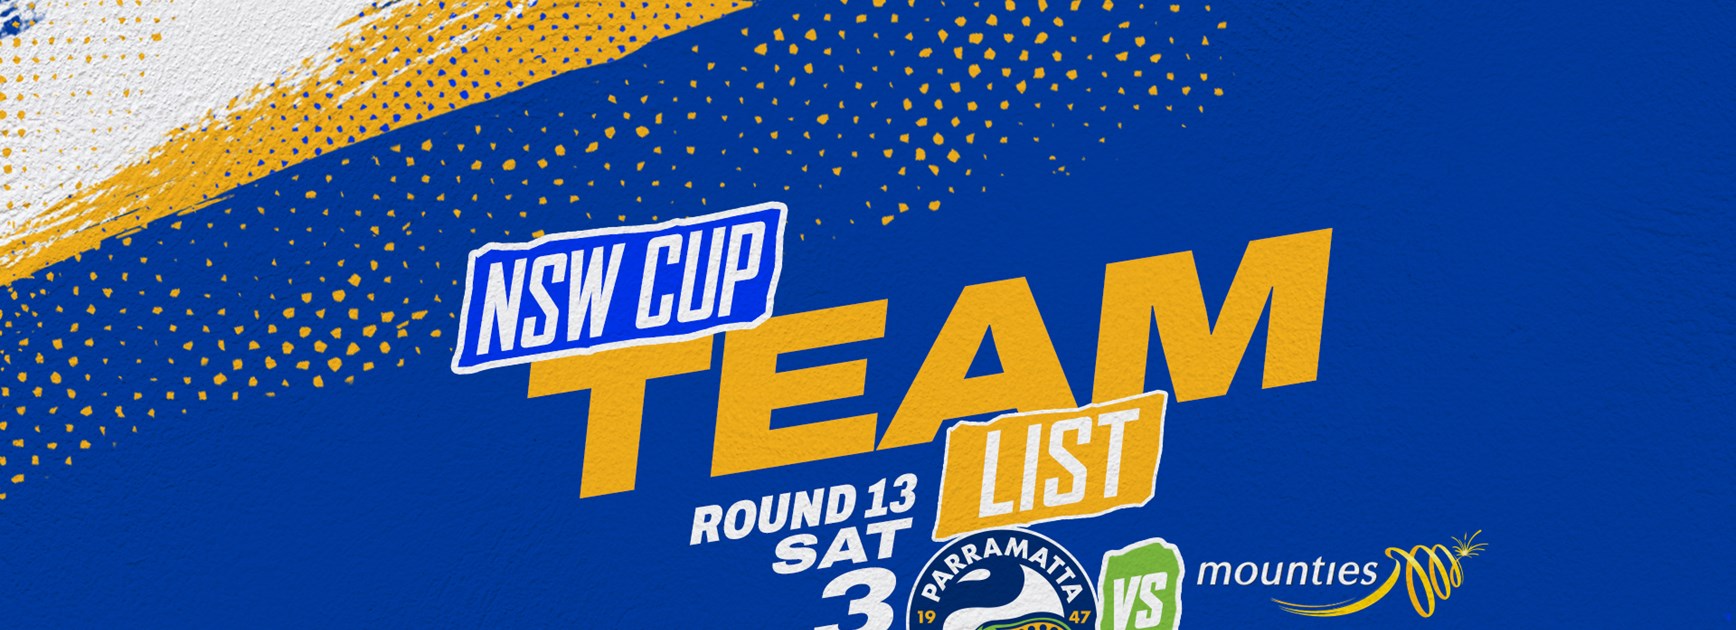 NSW Cup Team List - Round 13